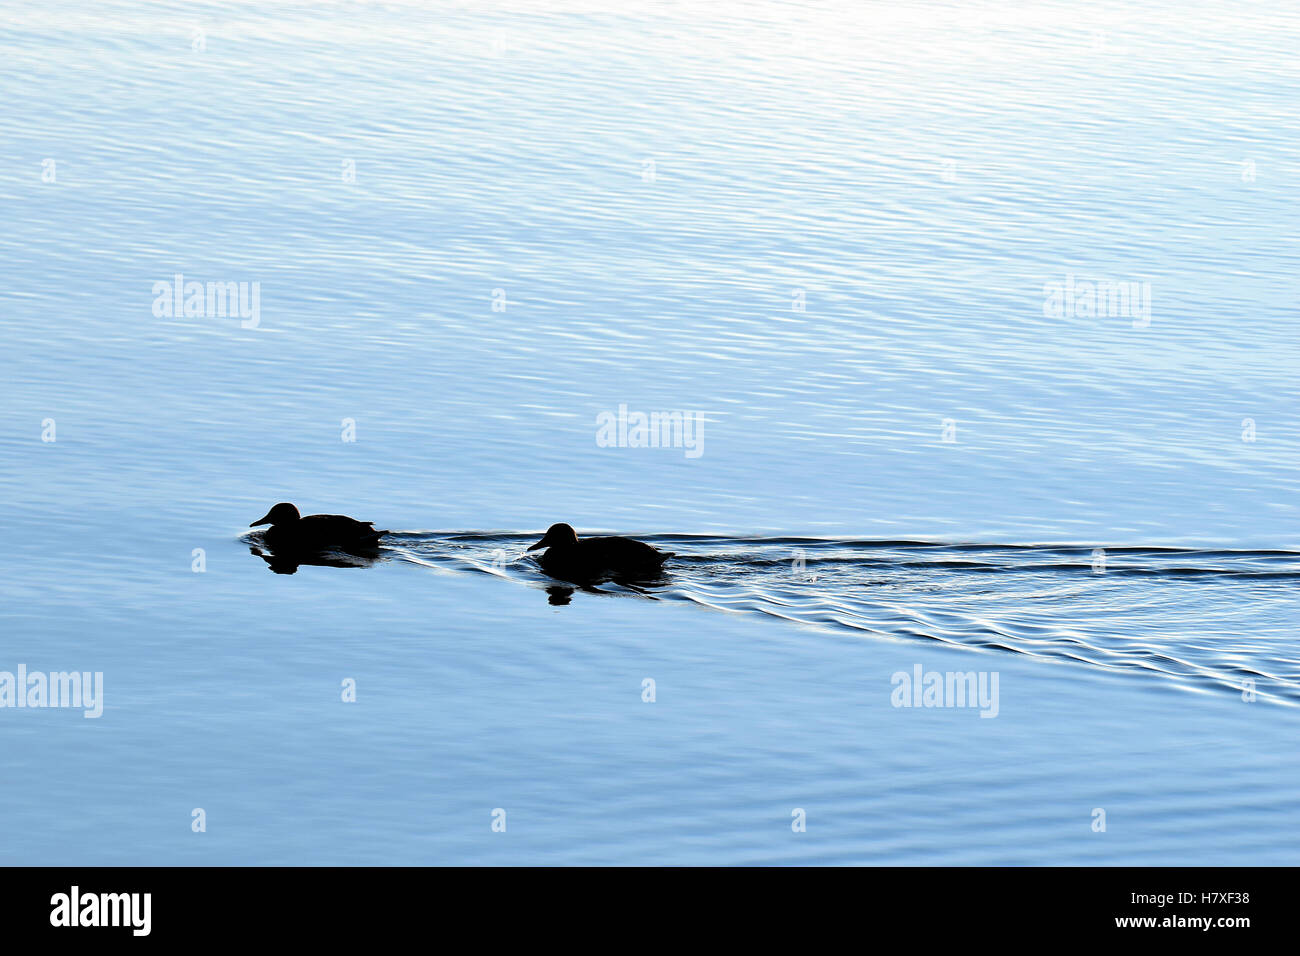 Silhouette ducks swimming on calm sea. Stock Photo